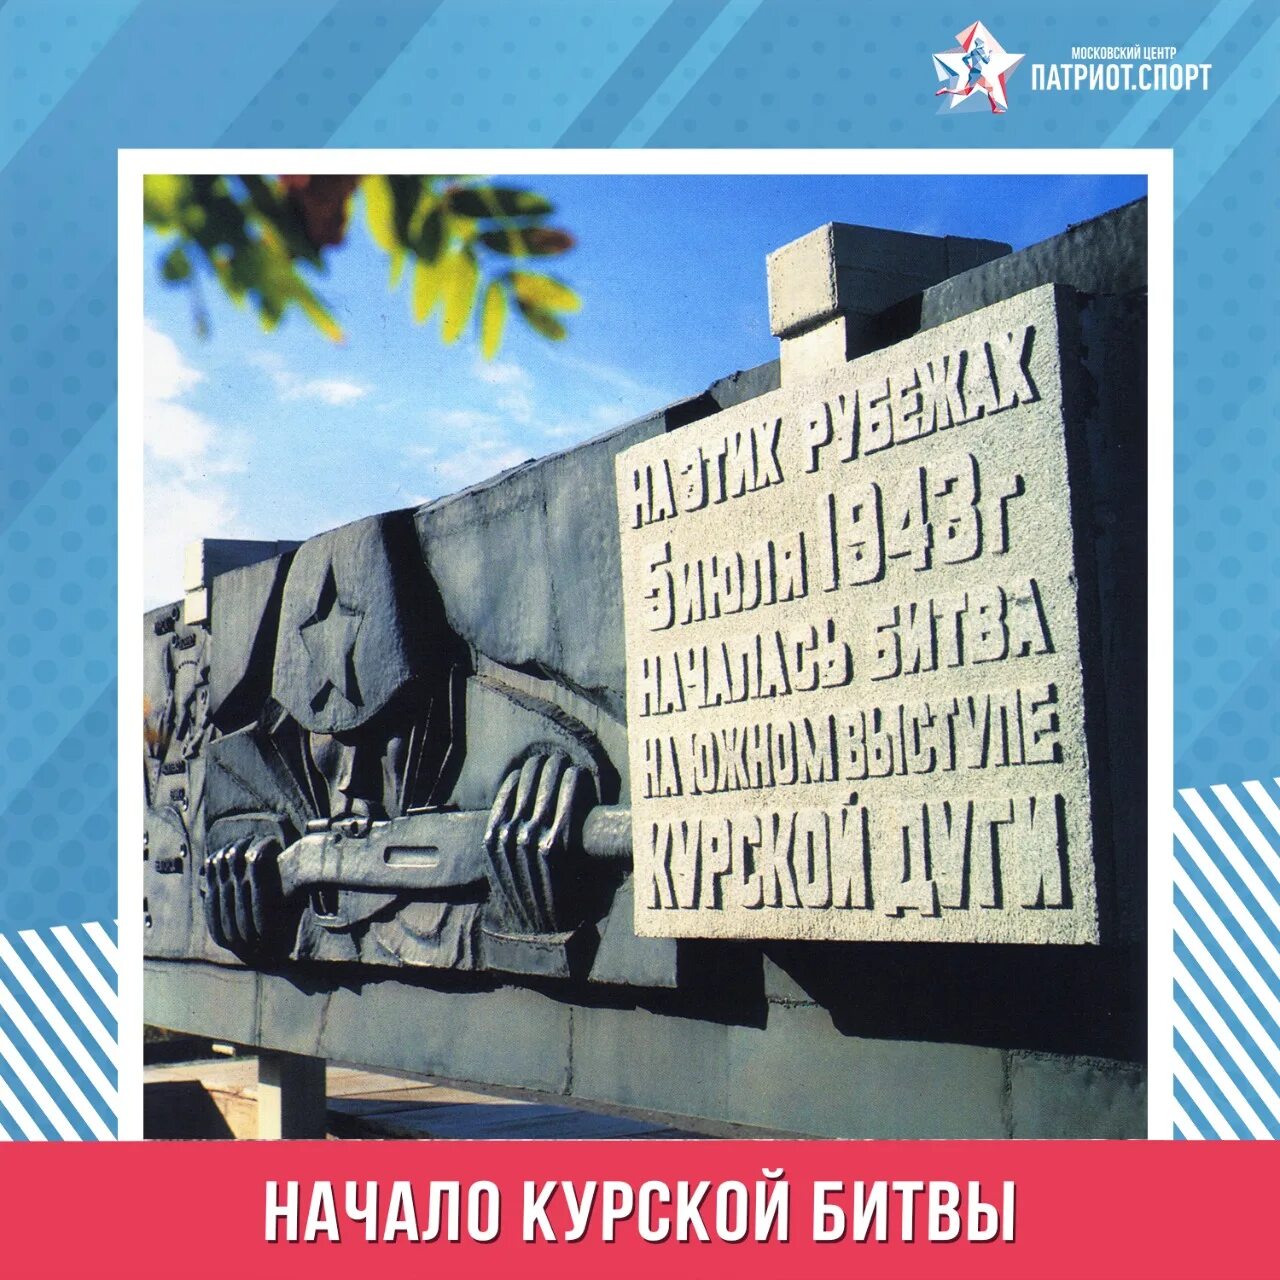 Сколько длилась курская. 5 Июля началась Курская битва. Начало Курской битвы. Курская битва 1943. 5 Июля 1943 года началась Курская битва.